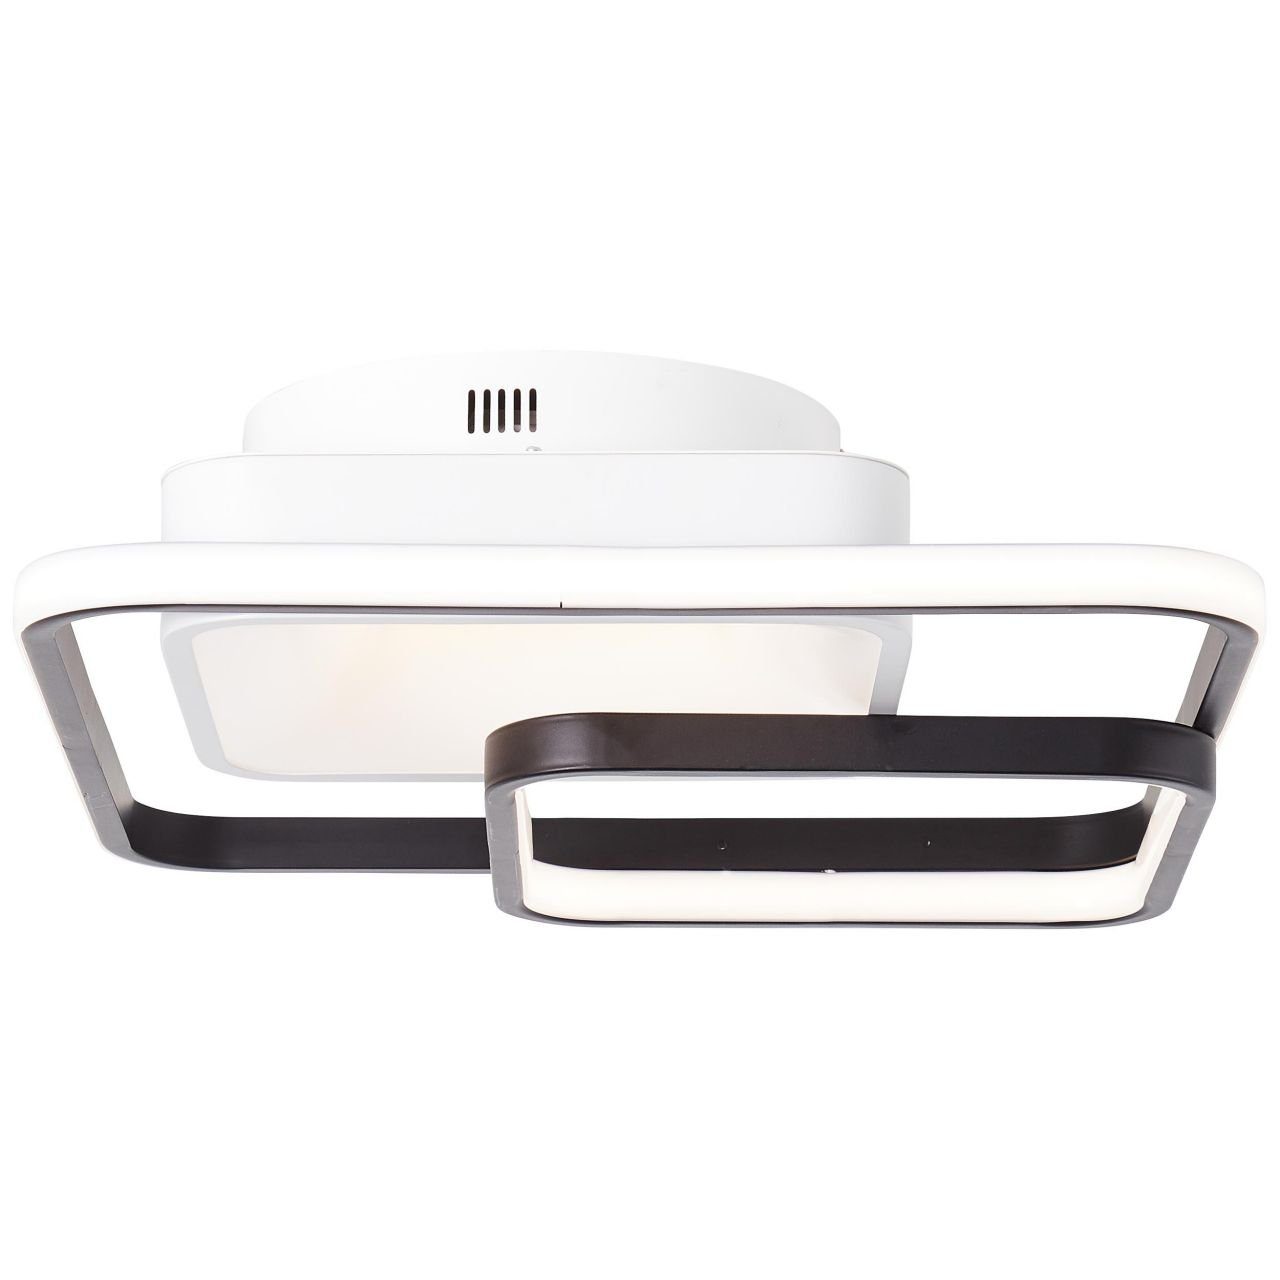 Cava, 40x40cm CCT LED Deckenleuchte LED 1x Lampe, weiß/schwarz, 3000-6700K, Deckenleuchte Cava integri Brilliant